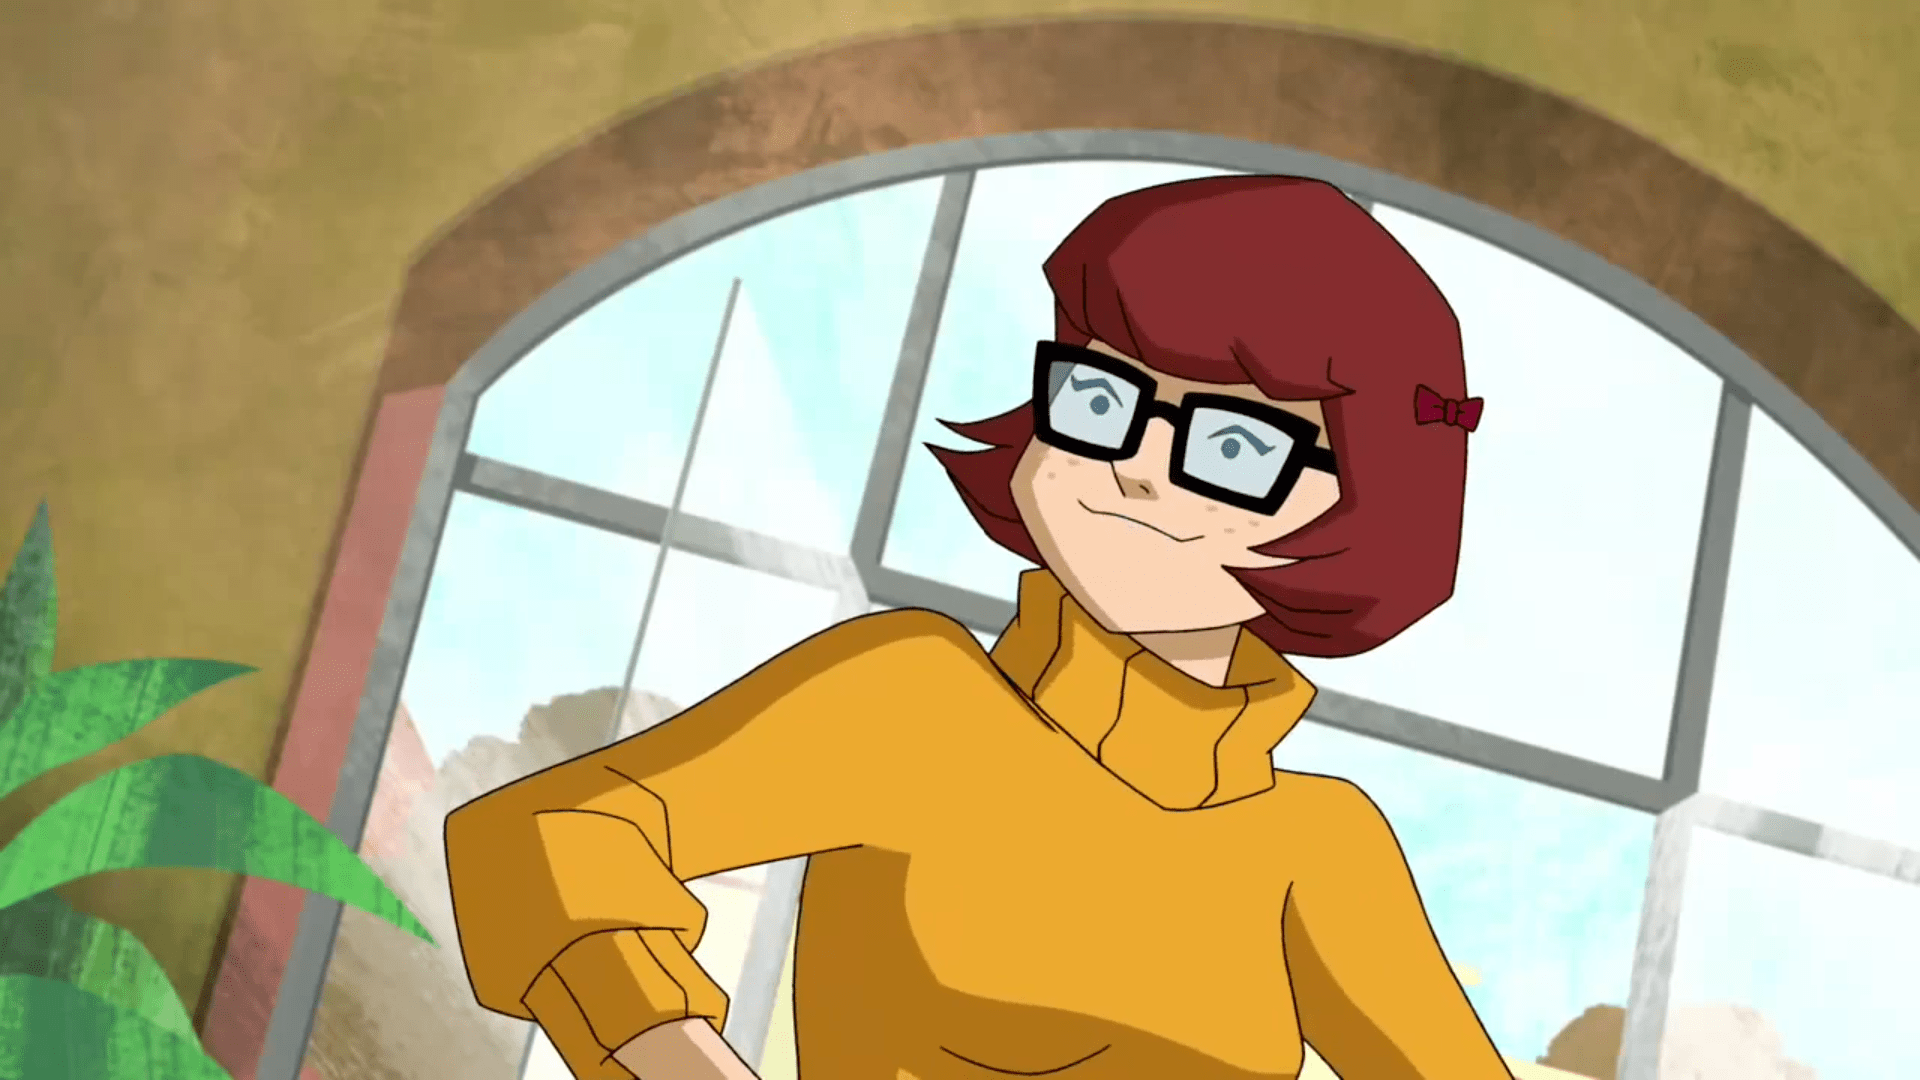 Scooby-Doo! Brasil on X: 💻 Os dois primeiros episódios da série animada  adulta Velma chegam dia 12 de Janeiro à HBO Max. Eles serão lançados  semanalmente na quinta feira. A primeira temporada